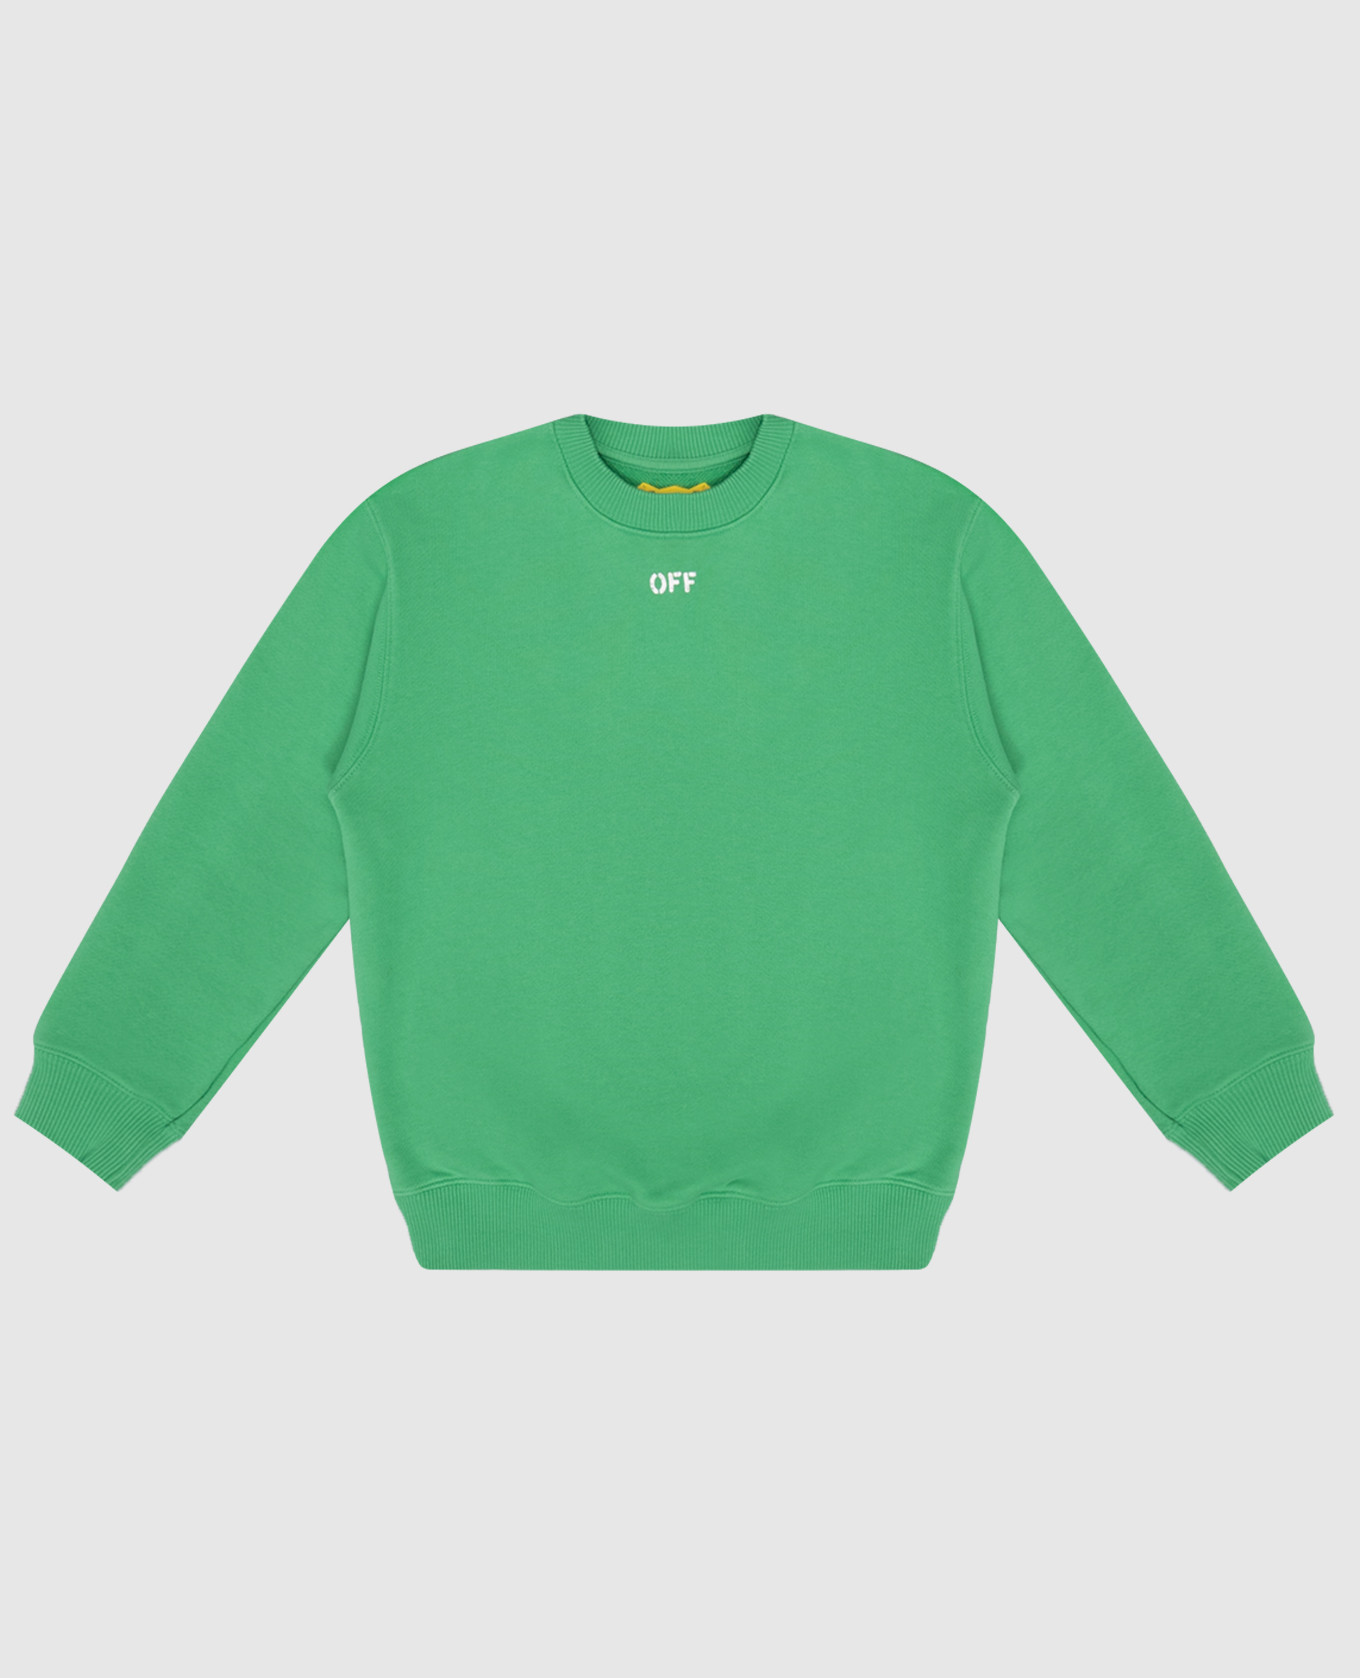 Children's green sweatshirt with Arrow logo print